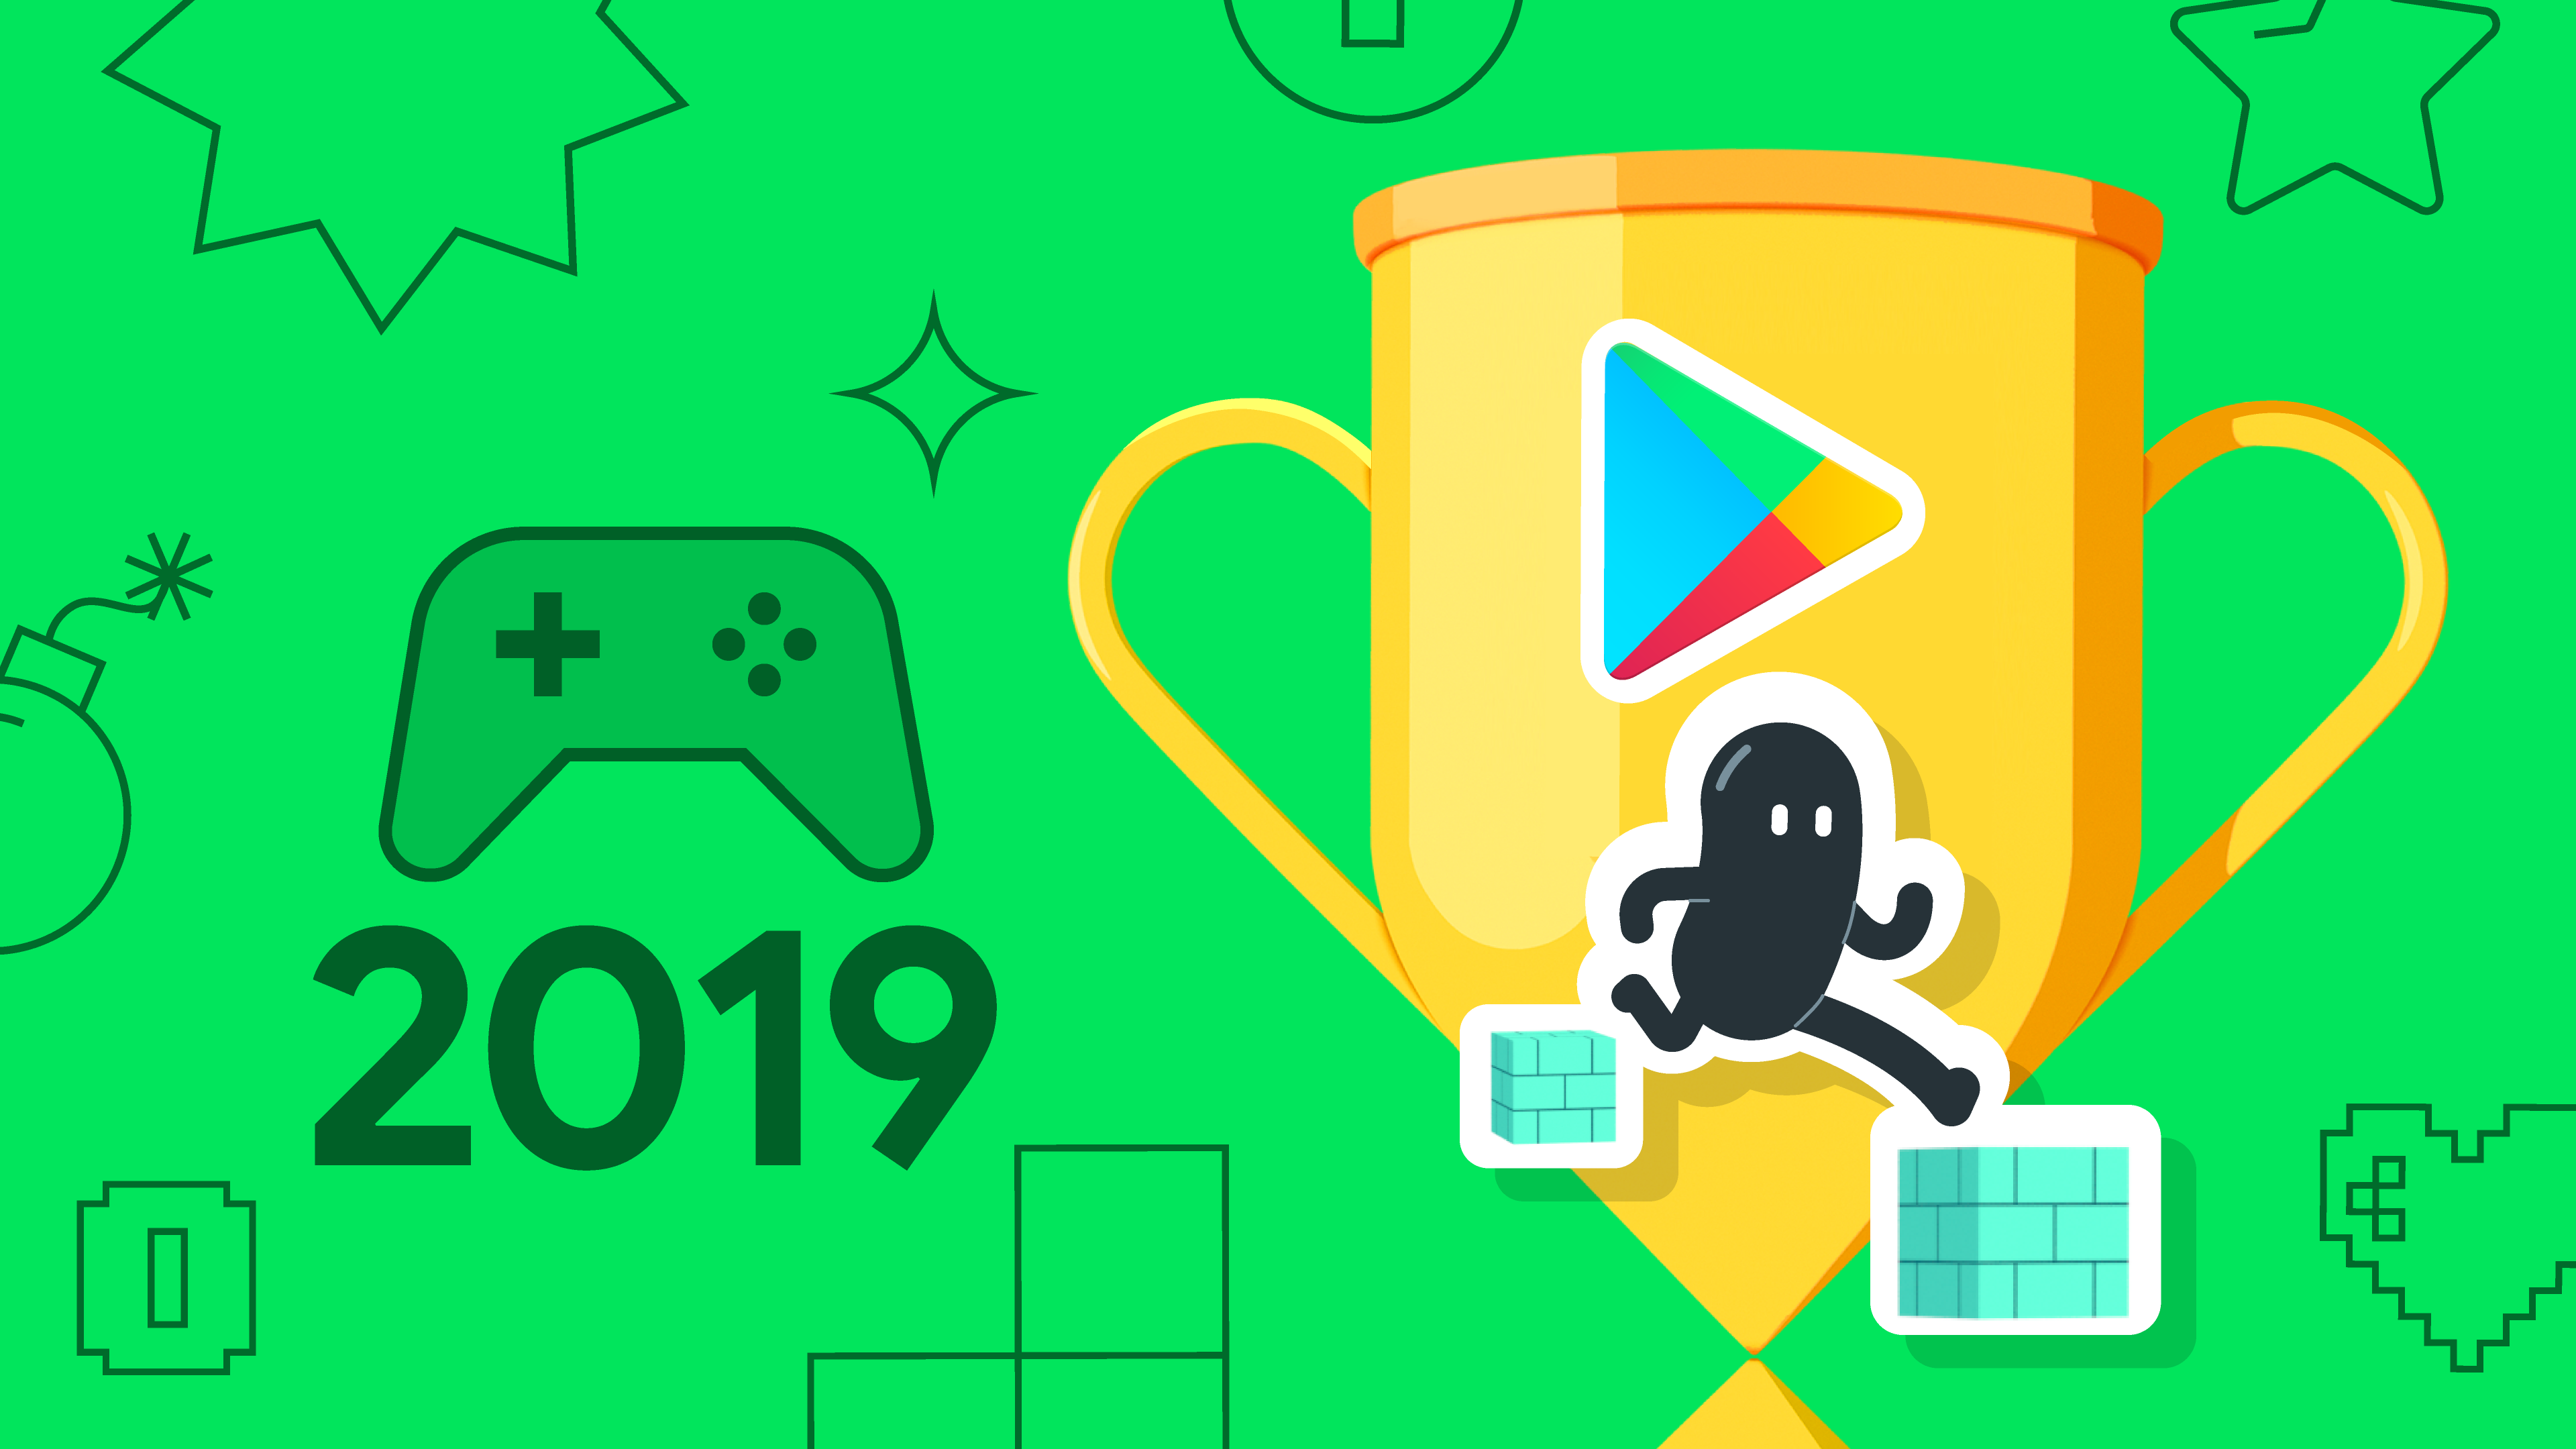 Os 10 melhores jogos indie para Android